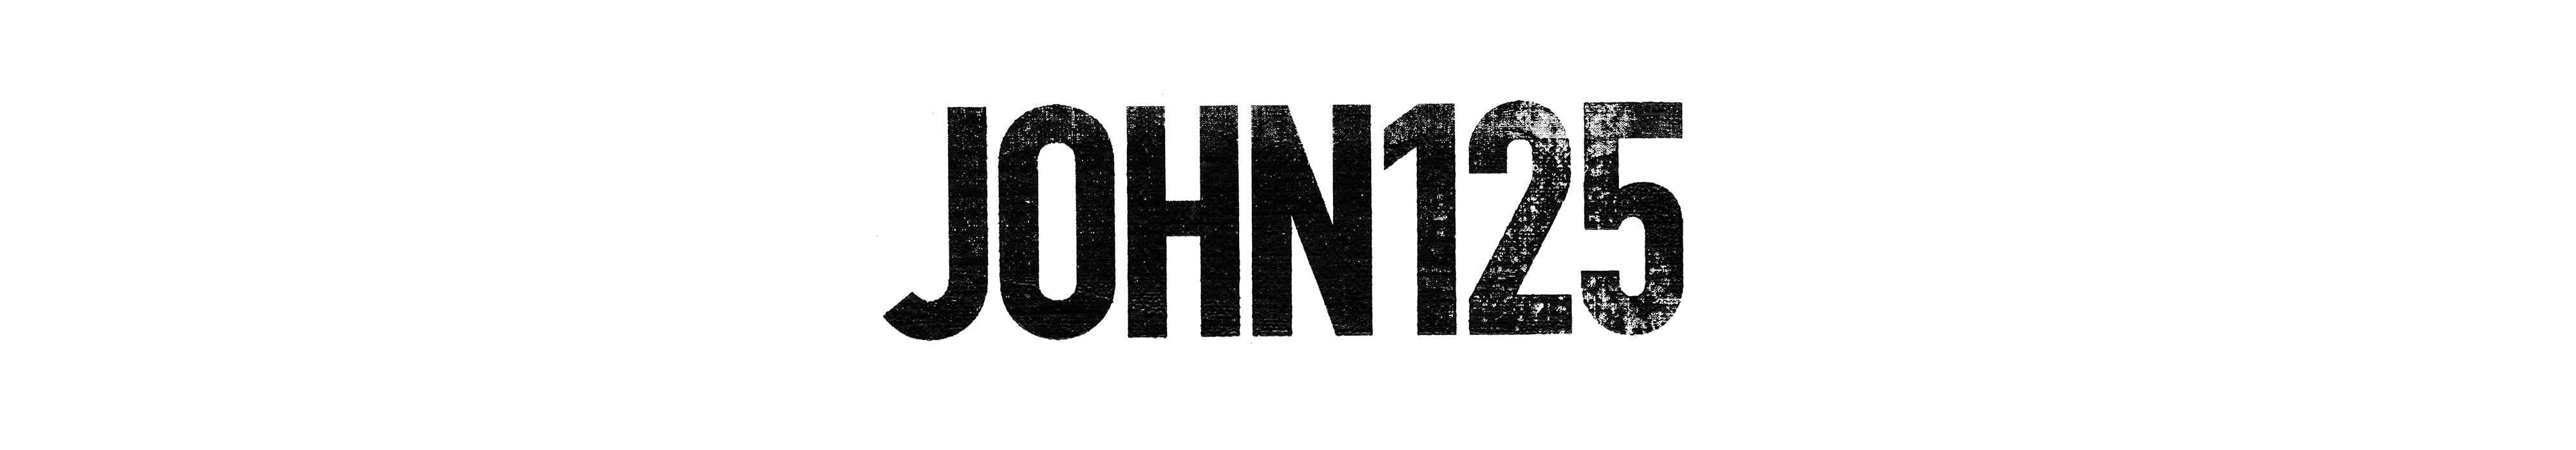 JOHN125